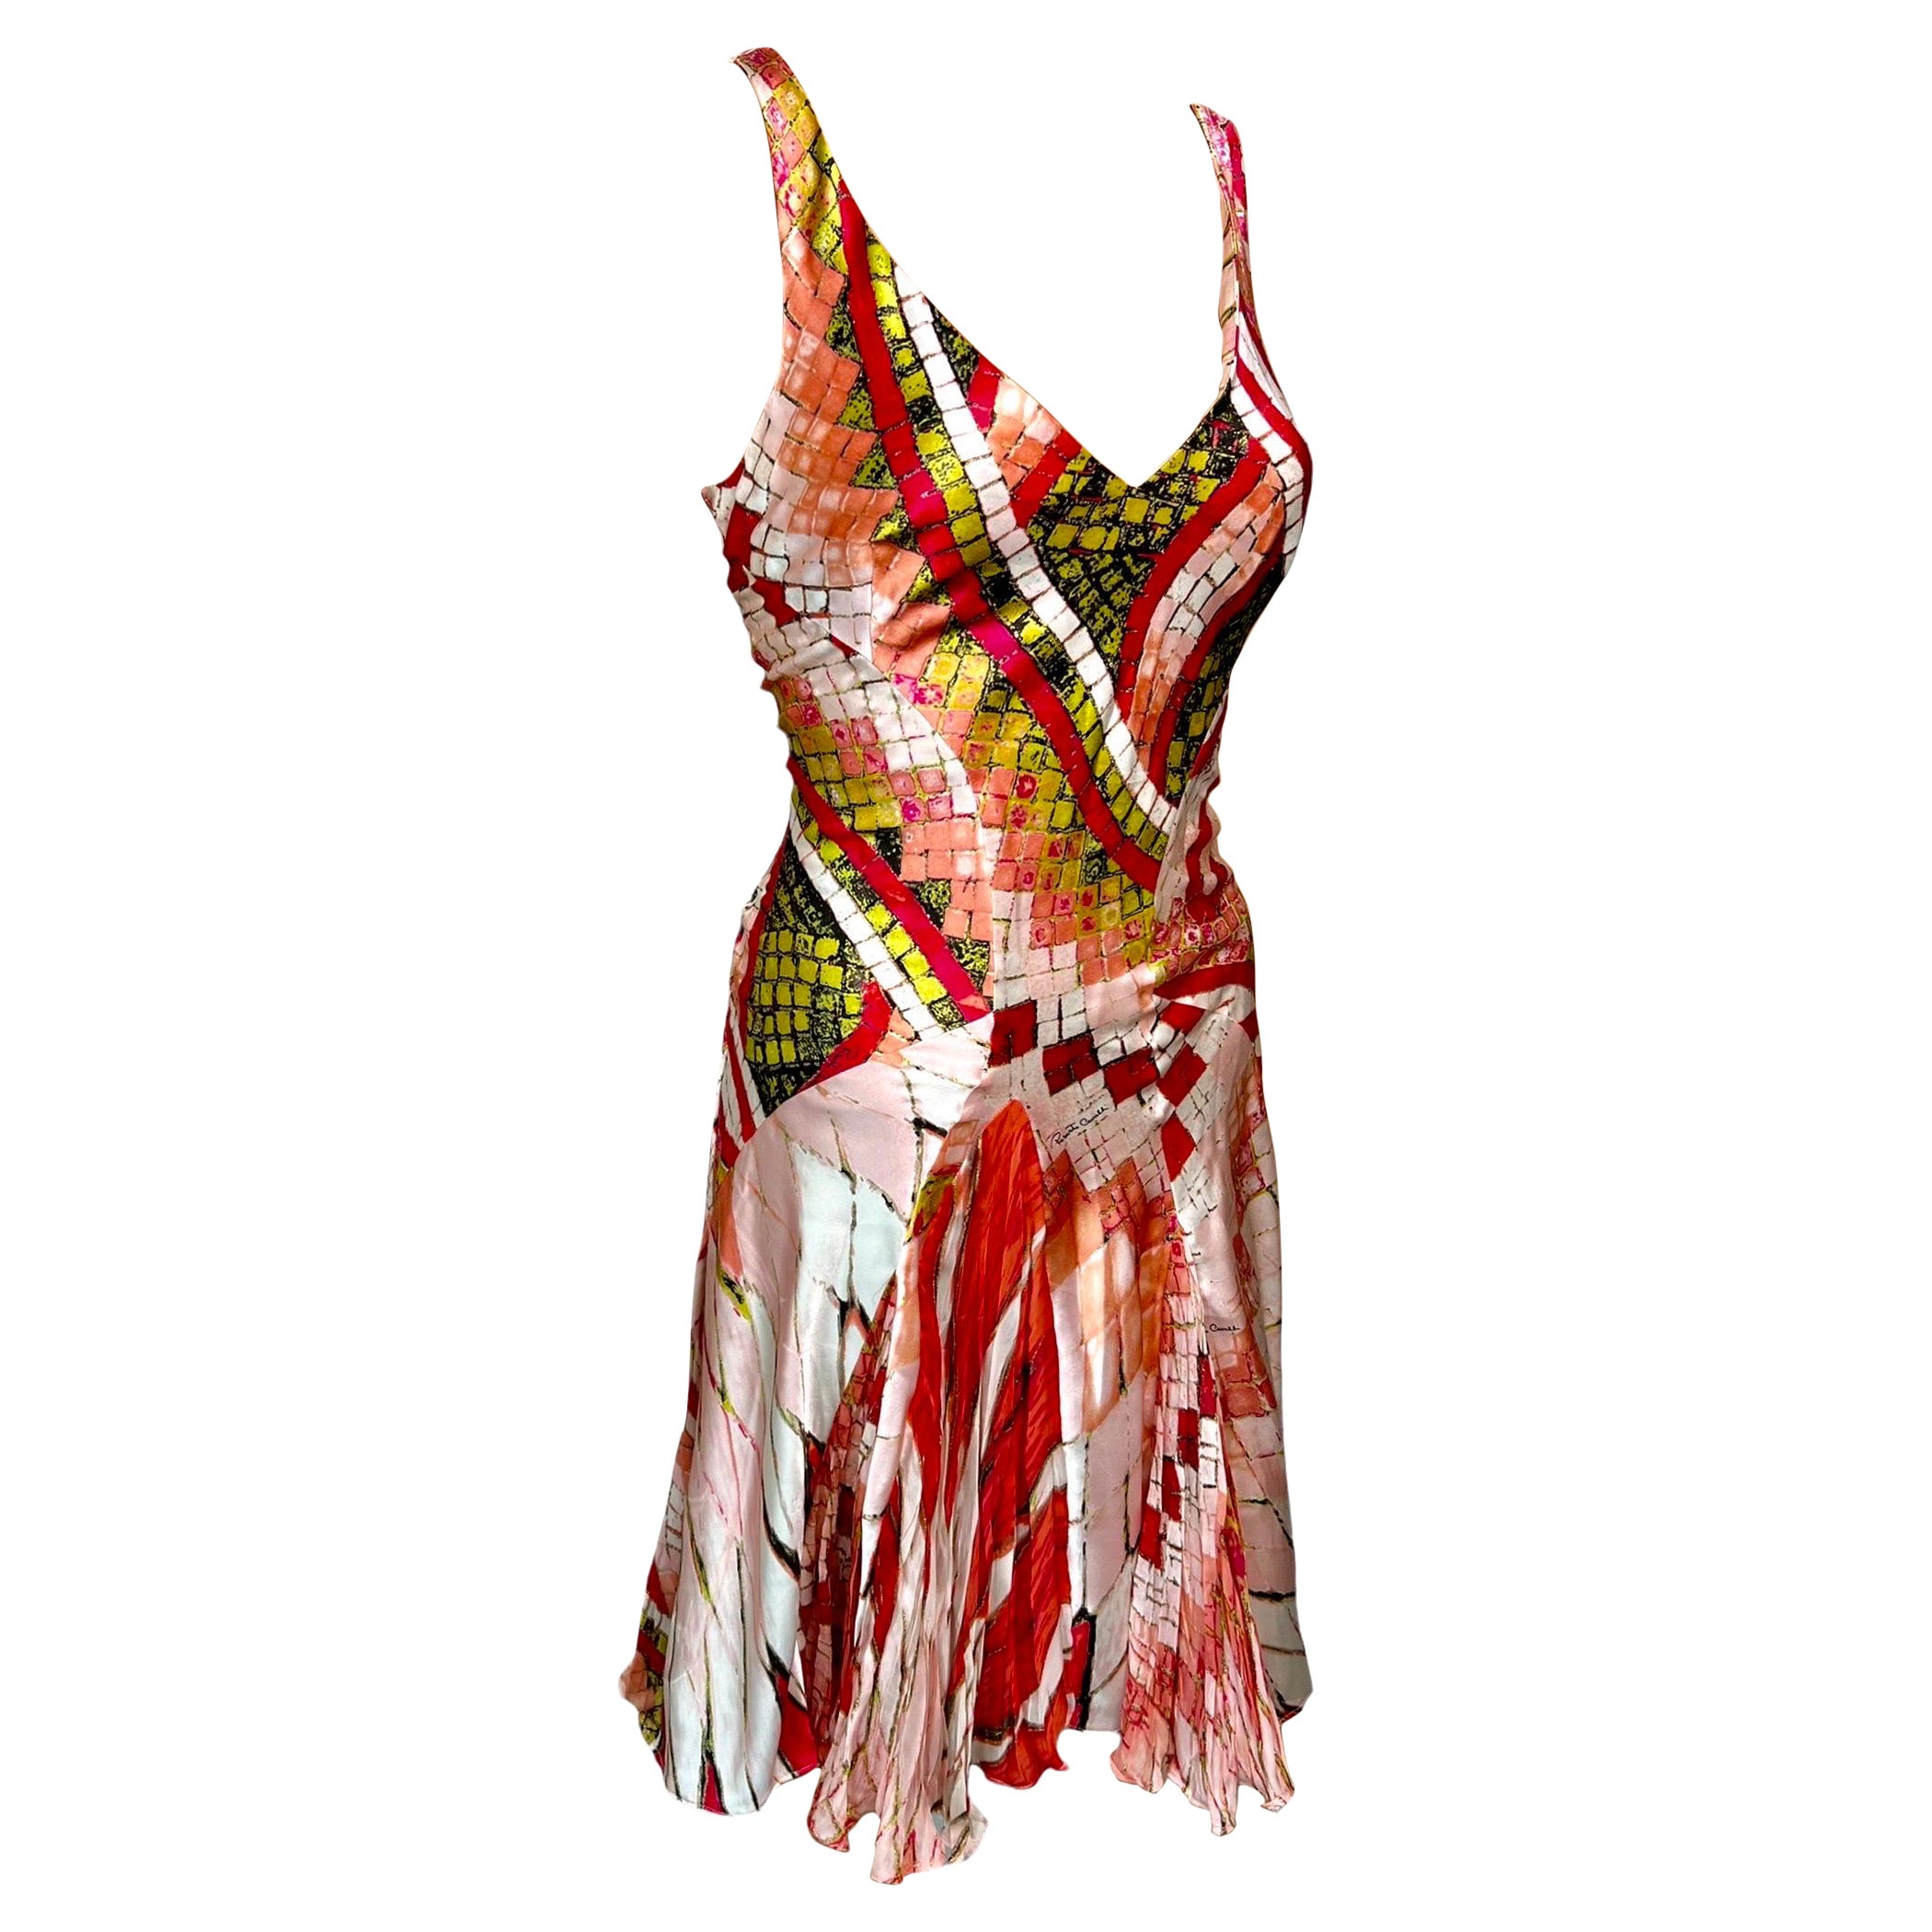 Roberto Cavalli S/S 2004 Plunging Neckline Silk Dress